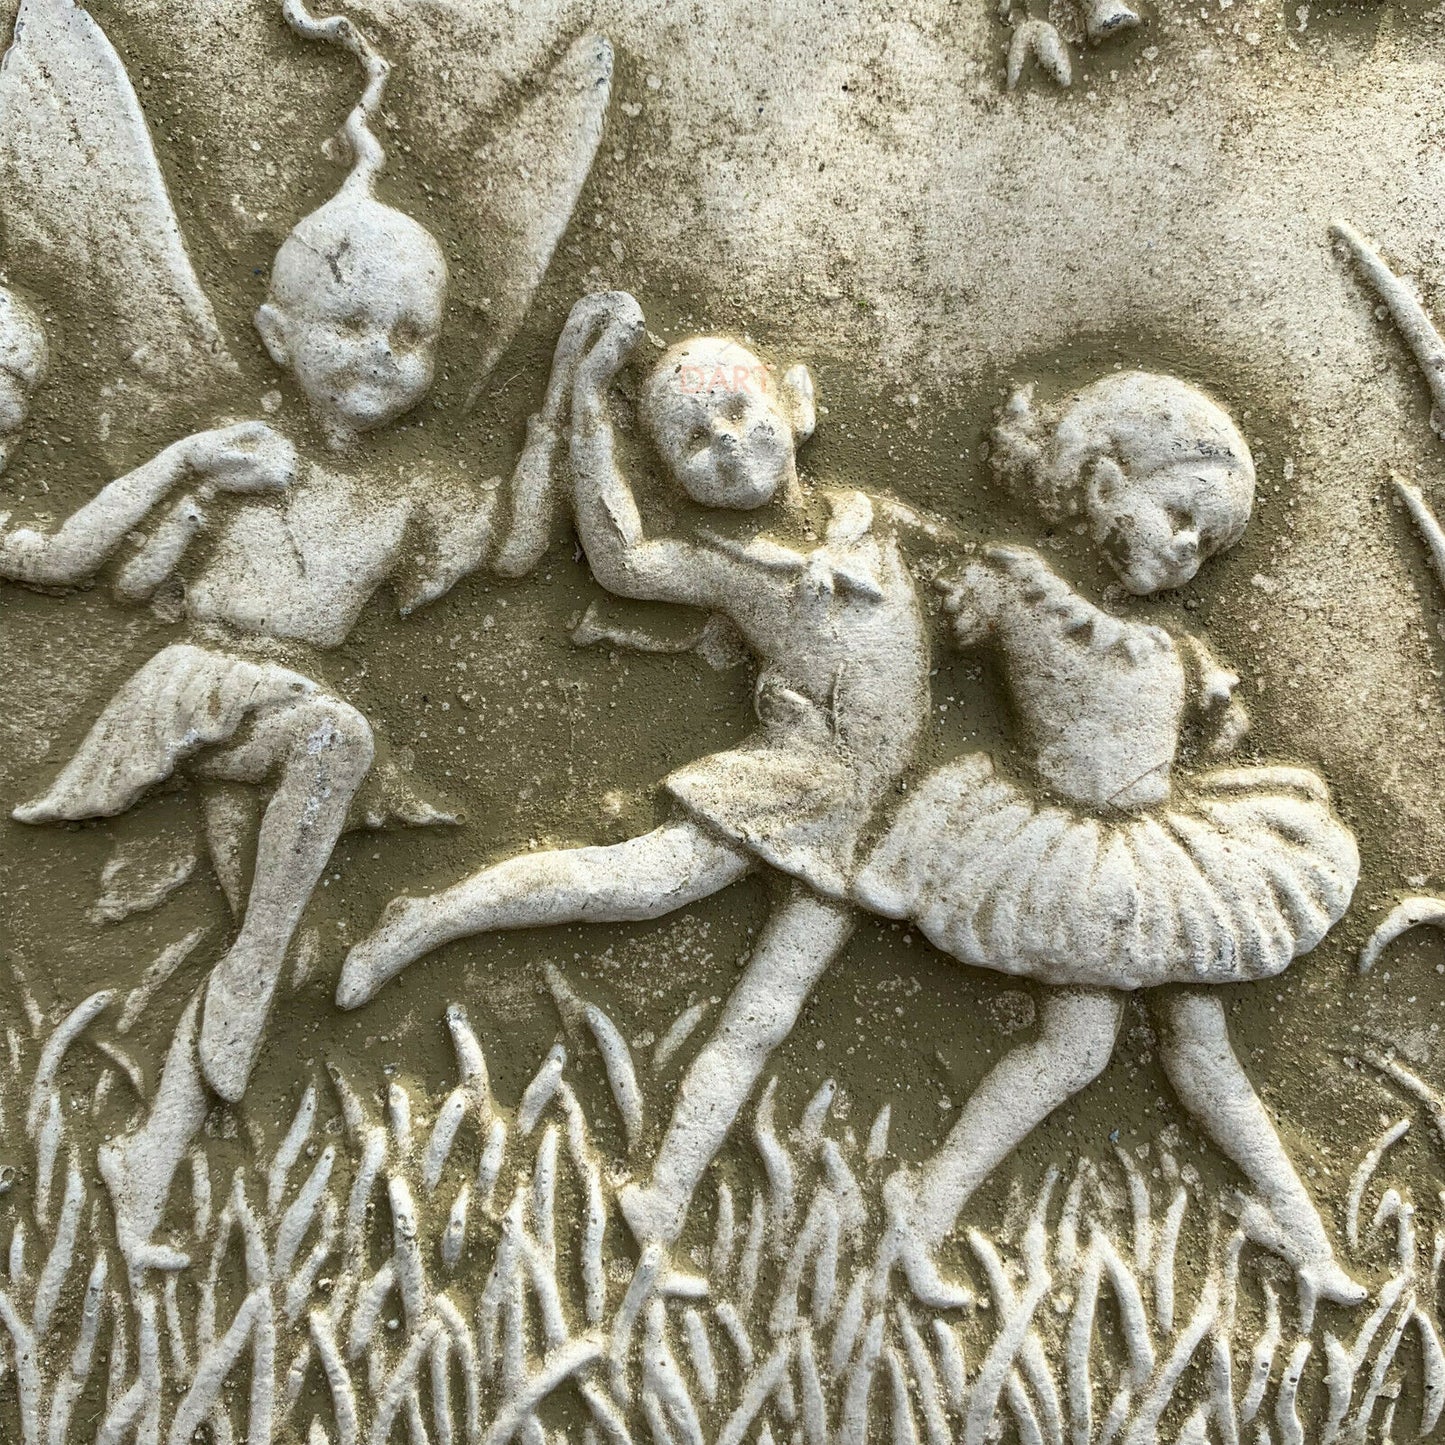 Wandtafel mit tanzenden Feen aus Stein